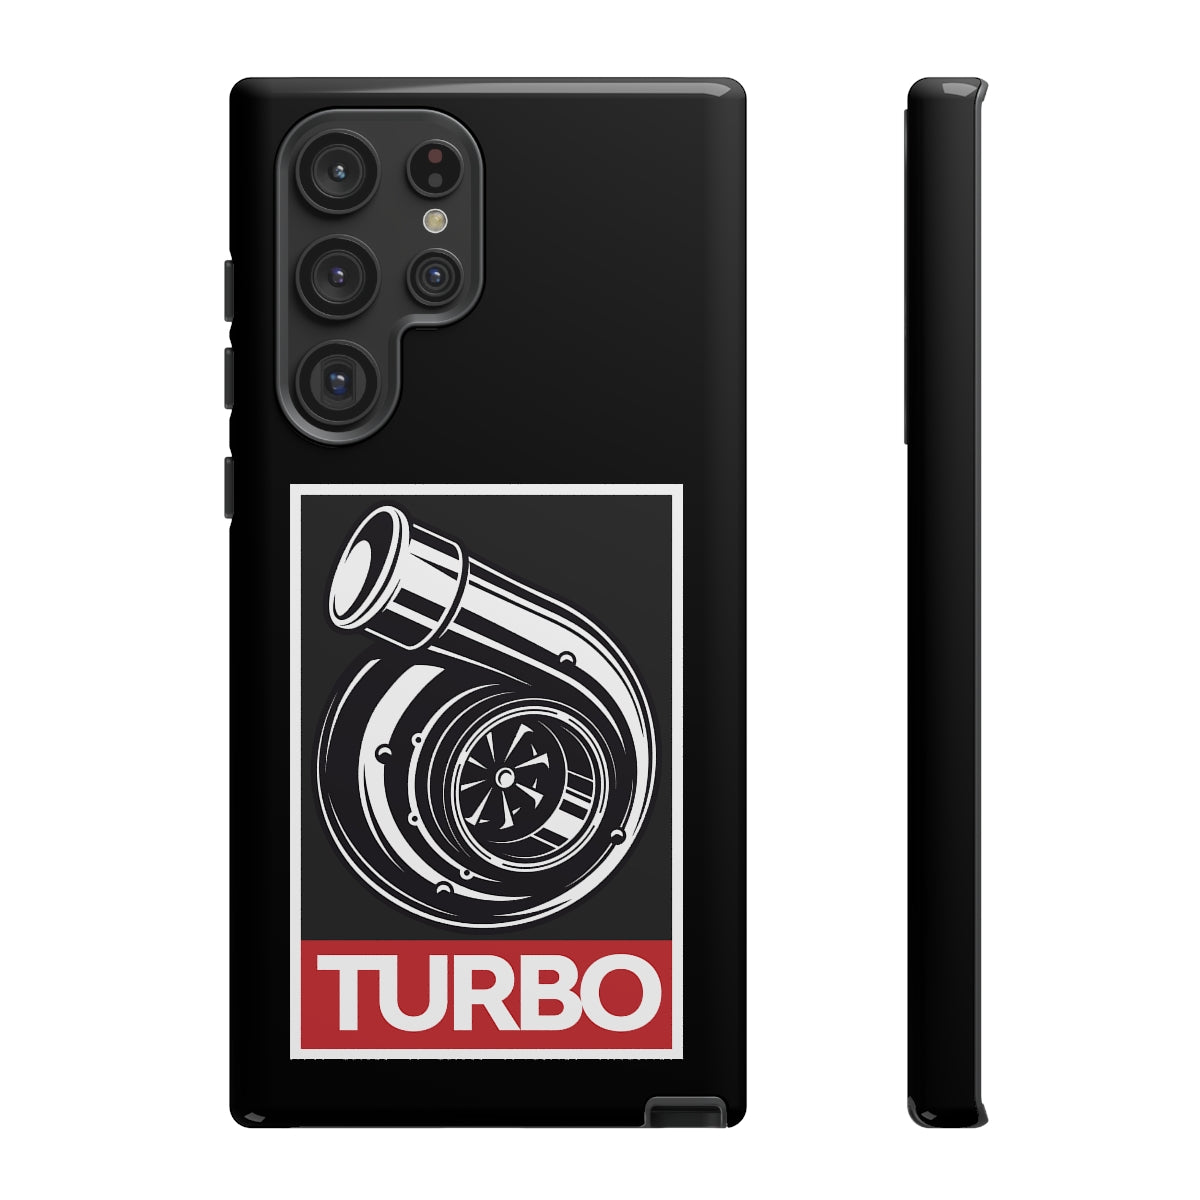 Turbo x Obey - Car Phone Case - Samsung Galaxy S22 Ultra